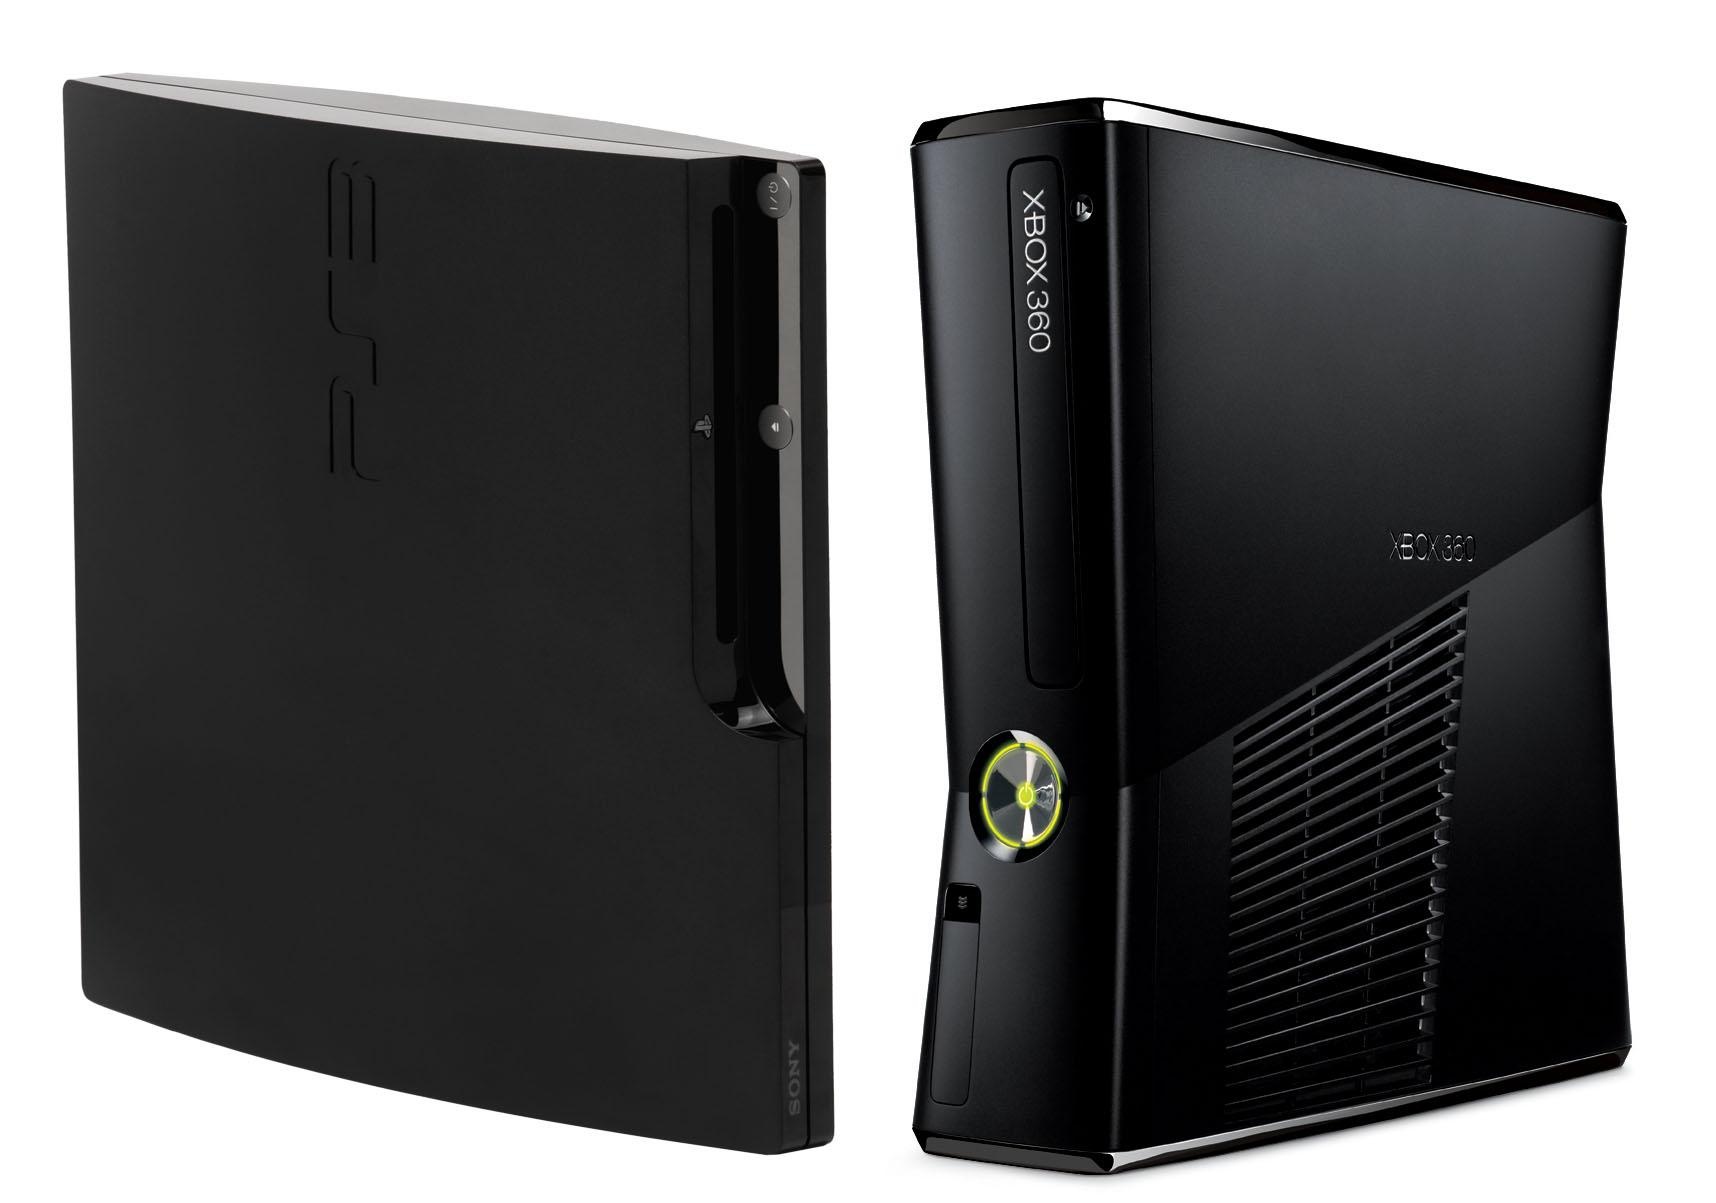 Ps3 ea. Приставки Sony Xbox 360. Хбокс 360 и плейстейшен 3. Xbox 360 e 2015. Xbox 360 vs ps3 Slim.